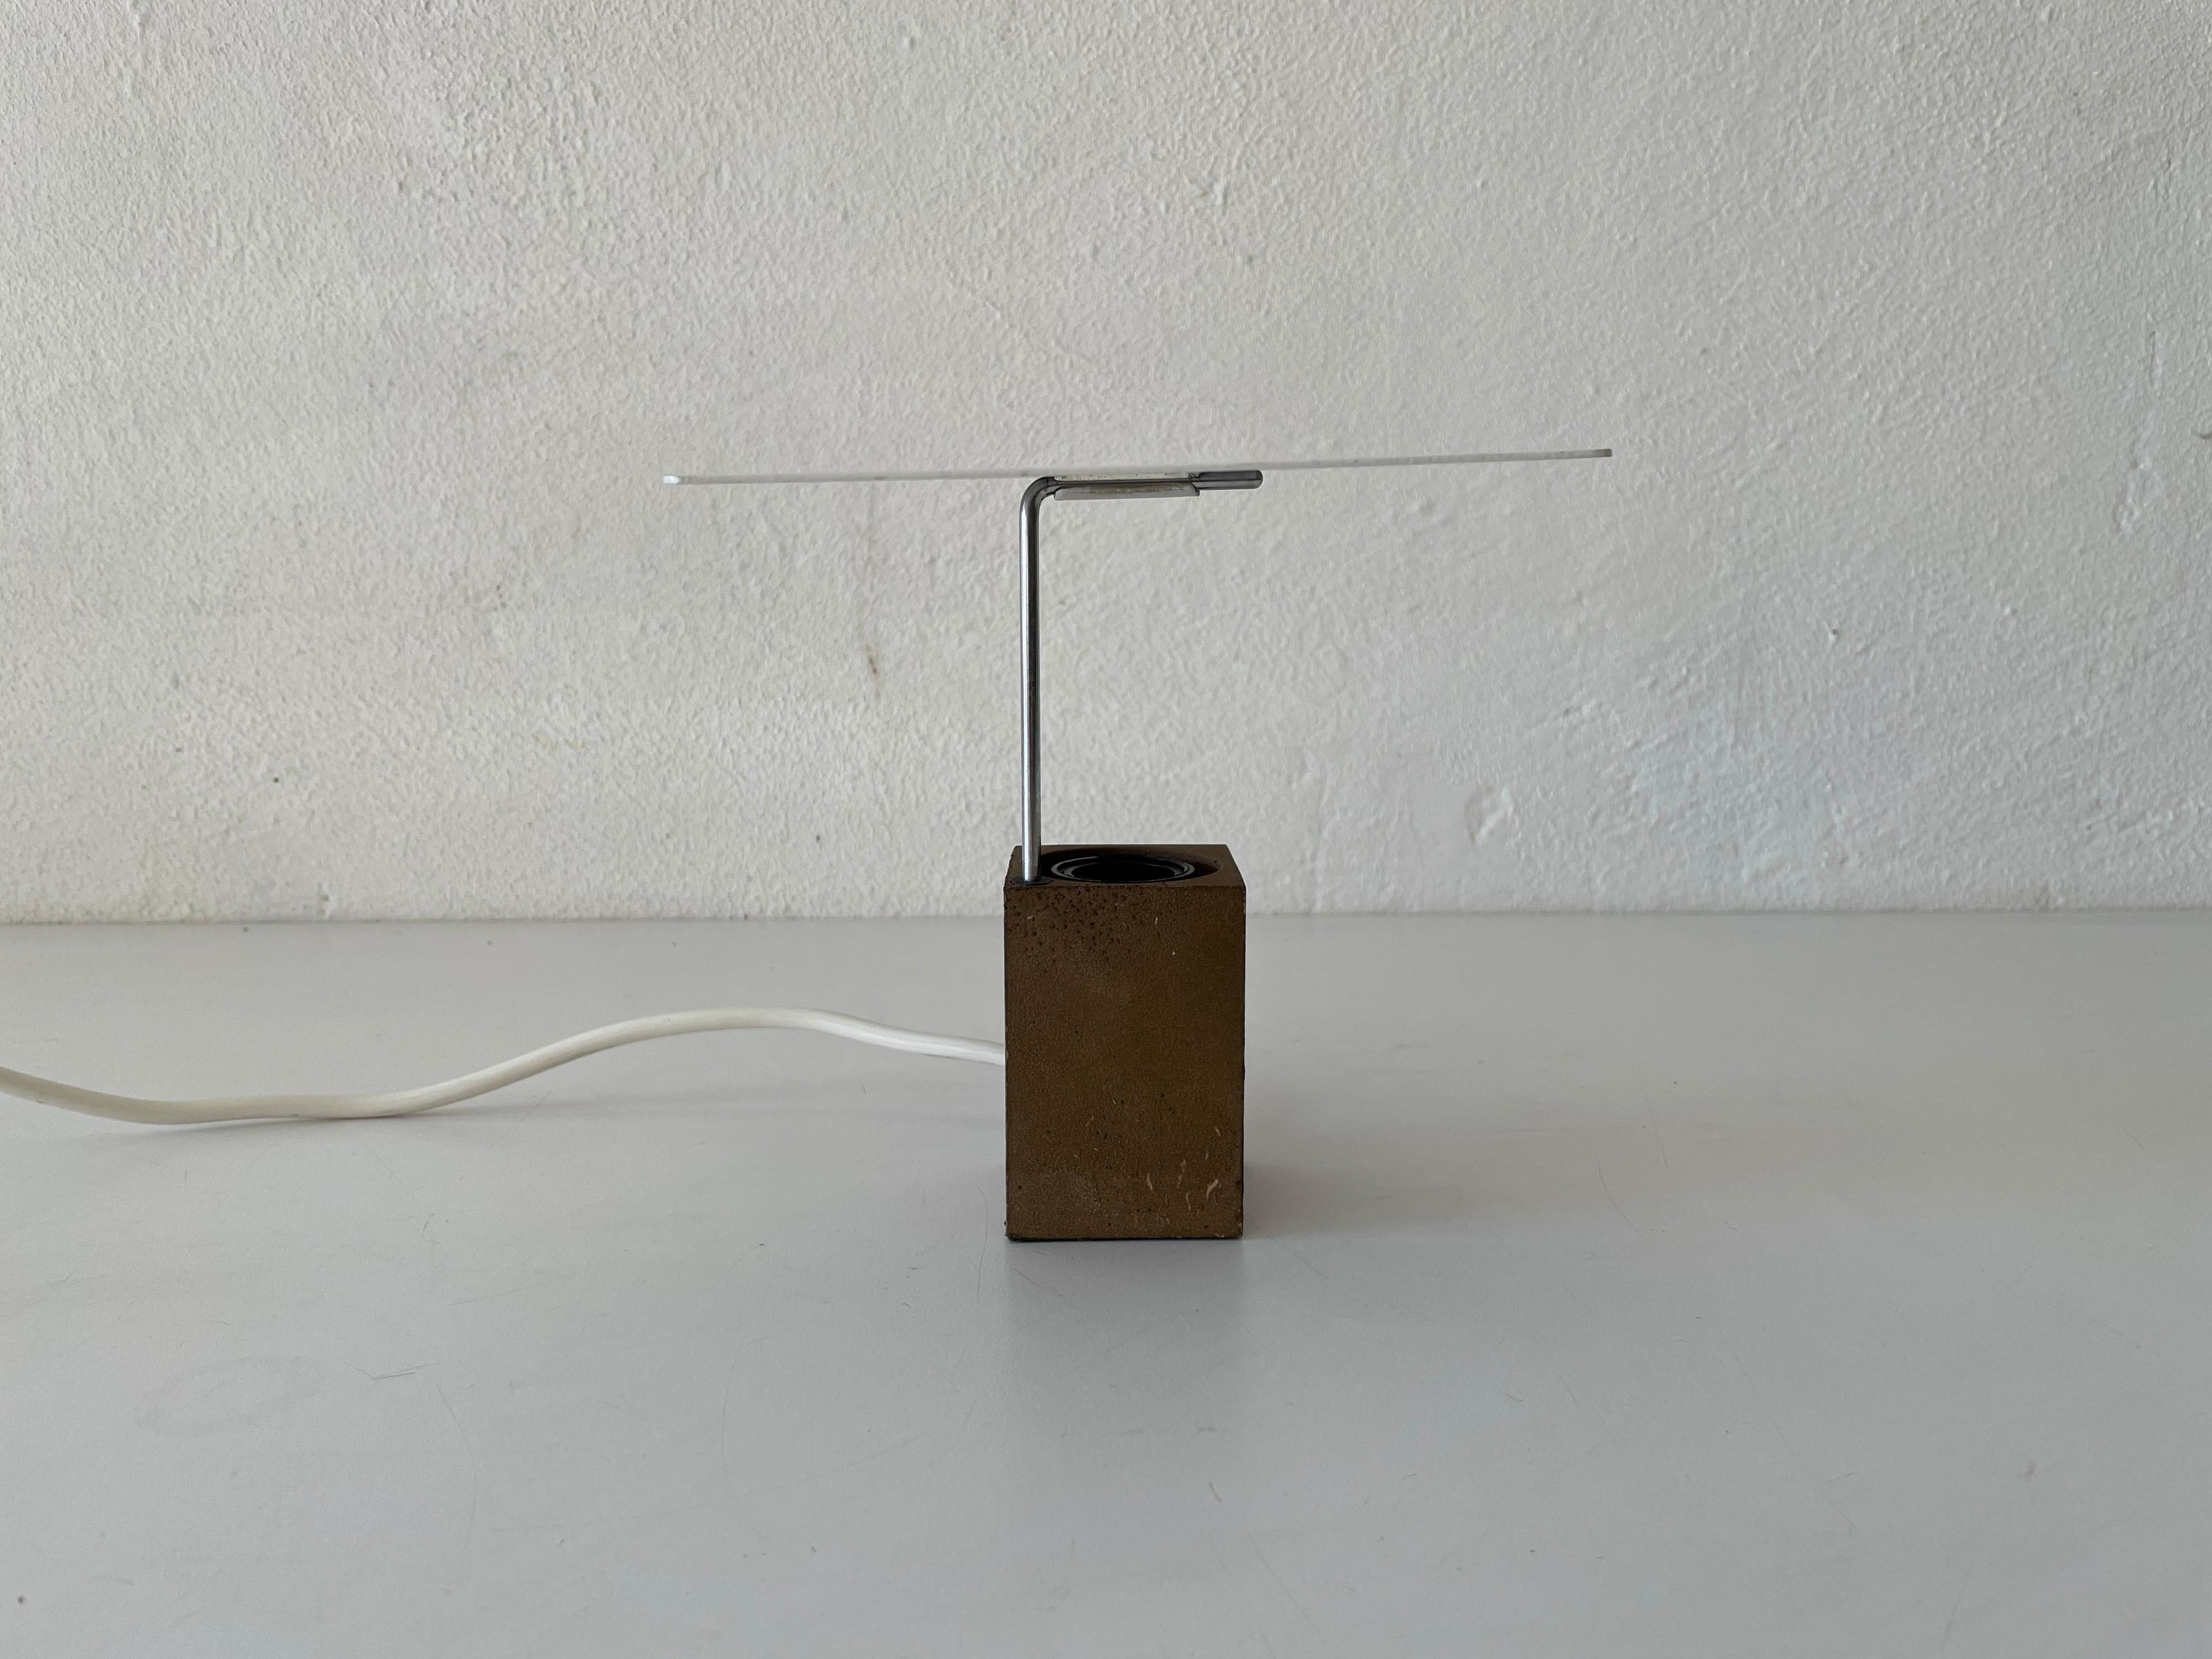 Lampe de table modèle 610 par Antonio Pio Macchi Cassia pour Arteluce, 1970 Italie

Abat-jour en métal et base en pierre brune

Design minimal et naturel avec un matériau de type cocon
Très haute qualité.
Entièrement fonctionnel.


Câble et